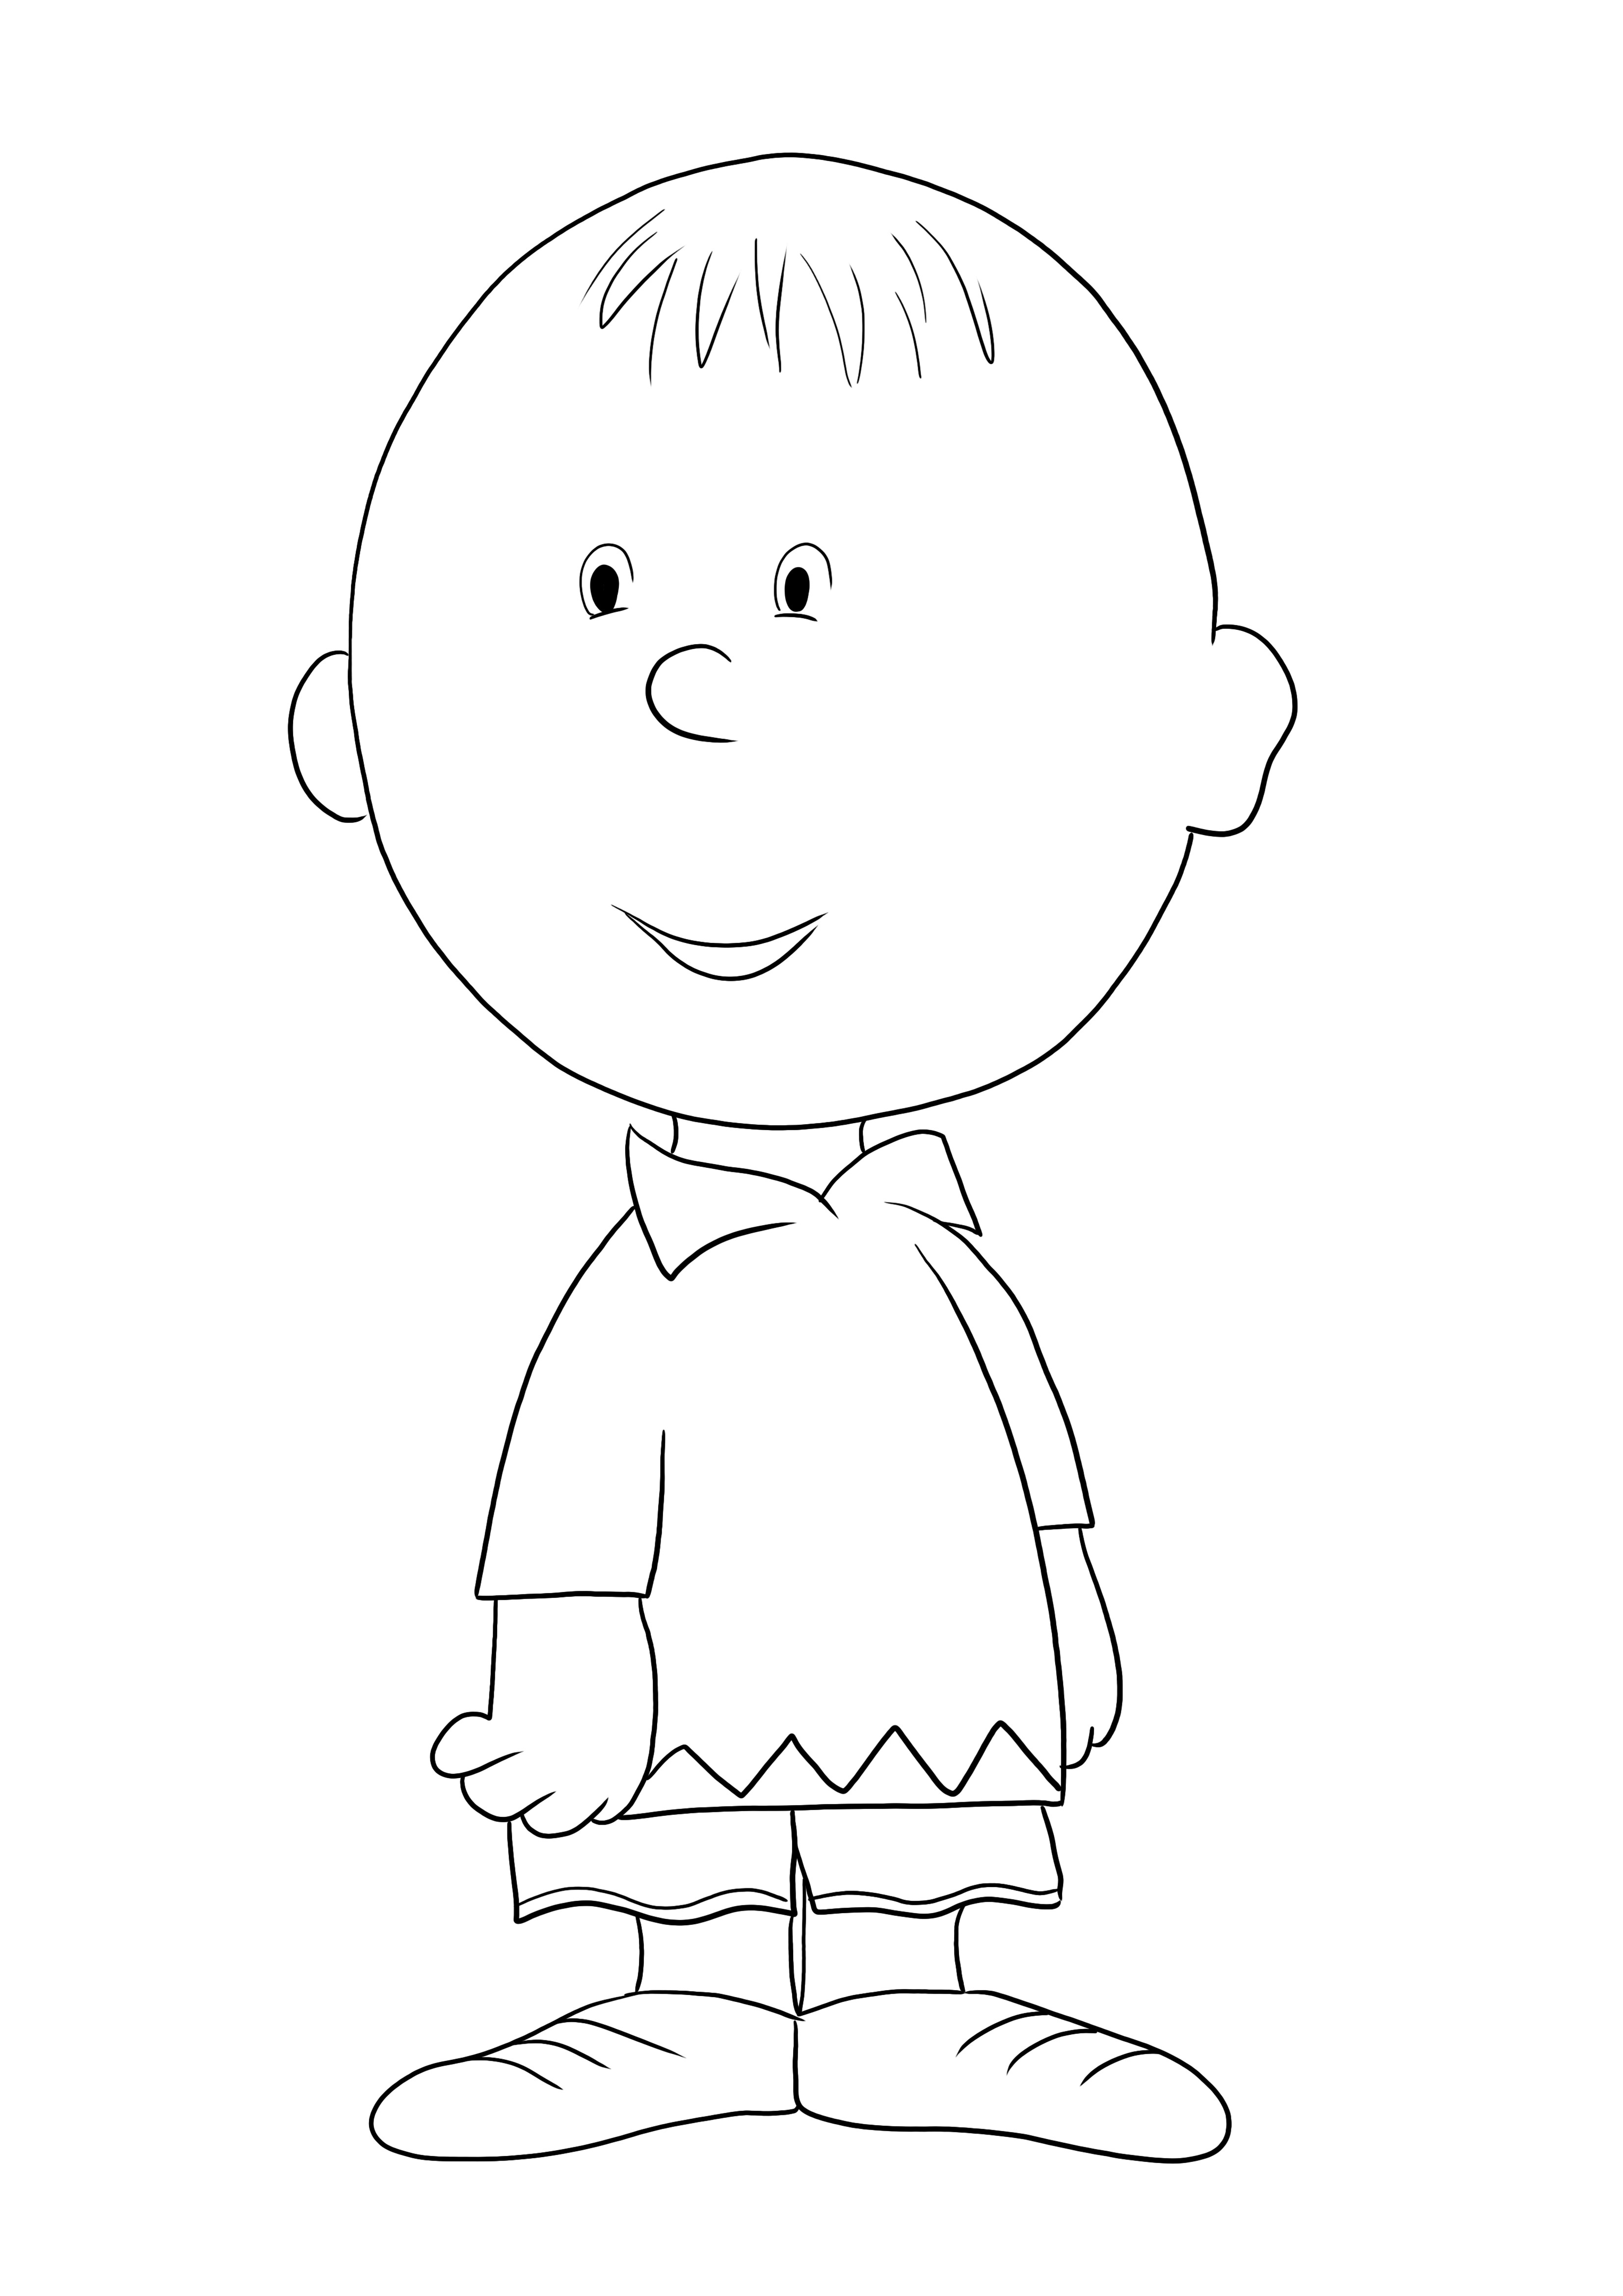 Super urocza kolorowanka Charlie Brown do wydrukowania lub pobrania za darmo dla dzieci